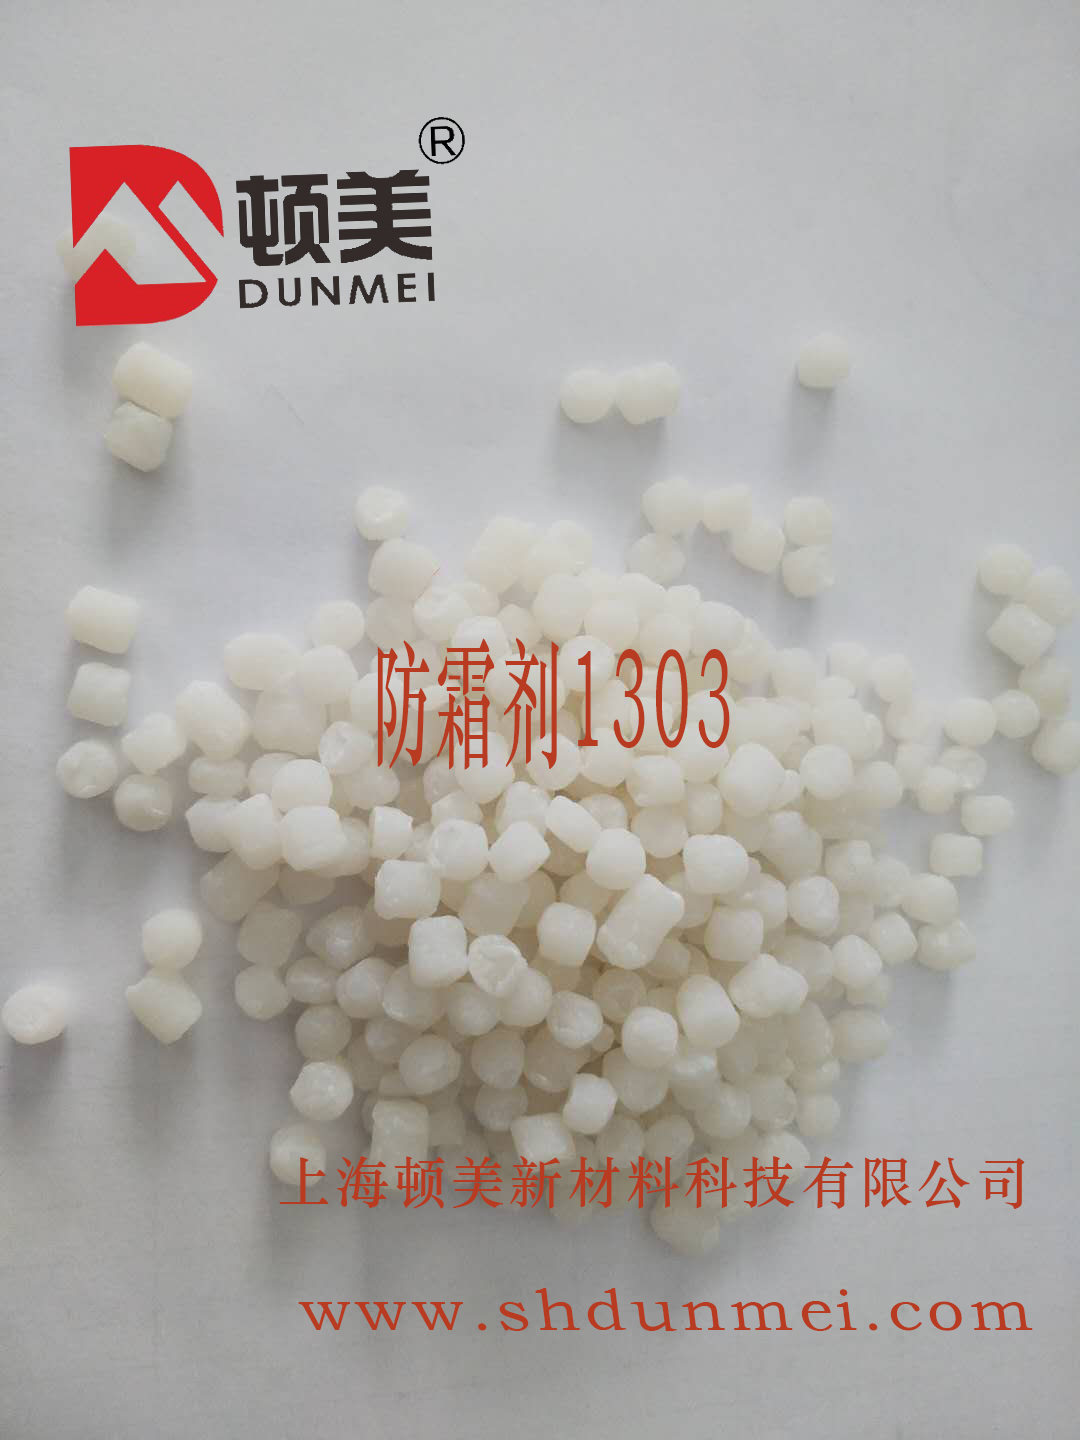 橡胶制品和硅胶制品防止发白，喷霜可使用防霜剂1303